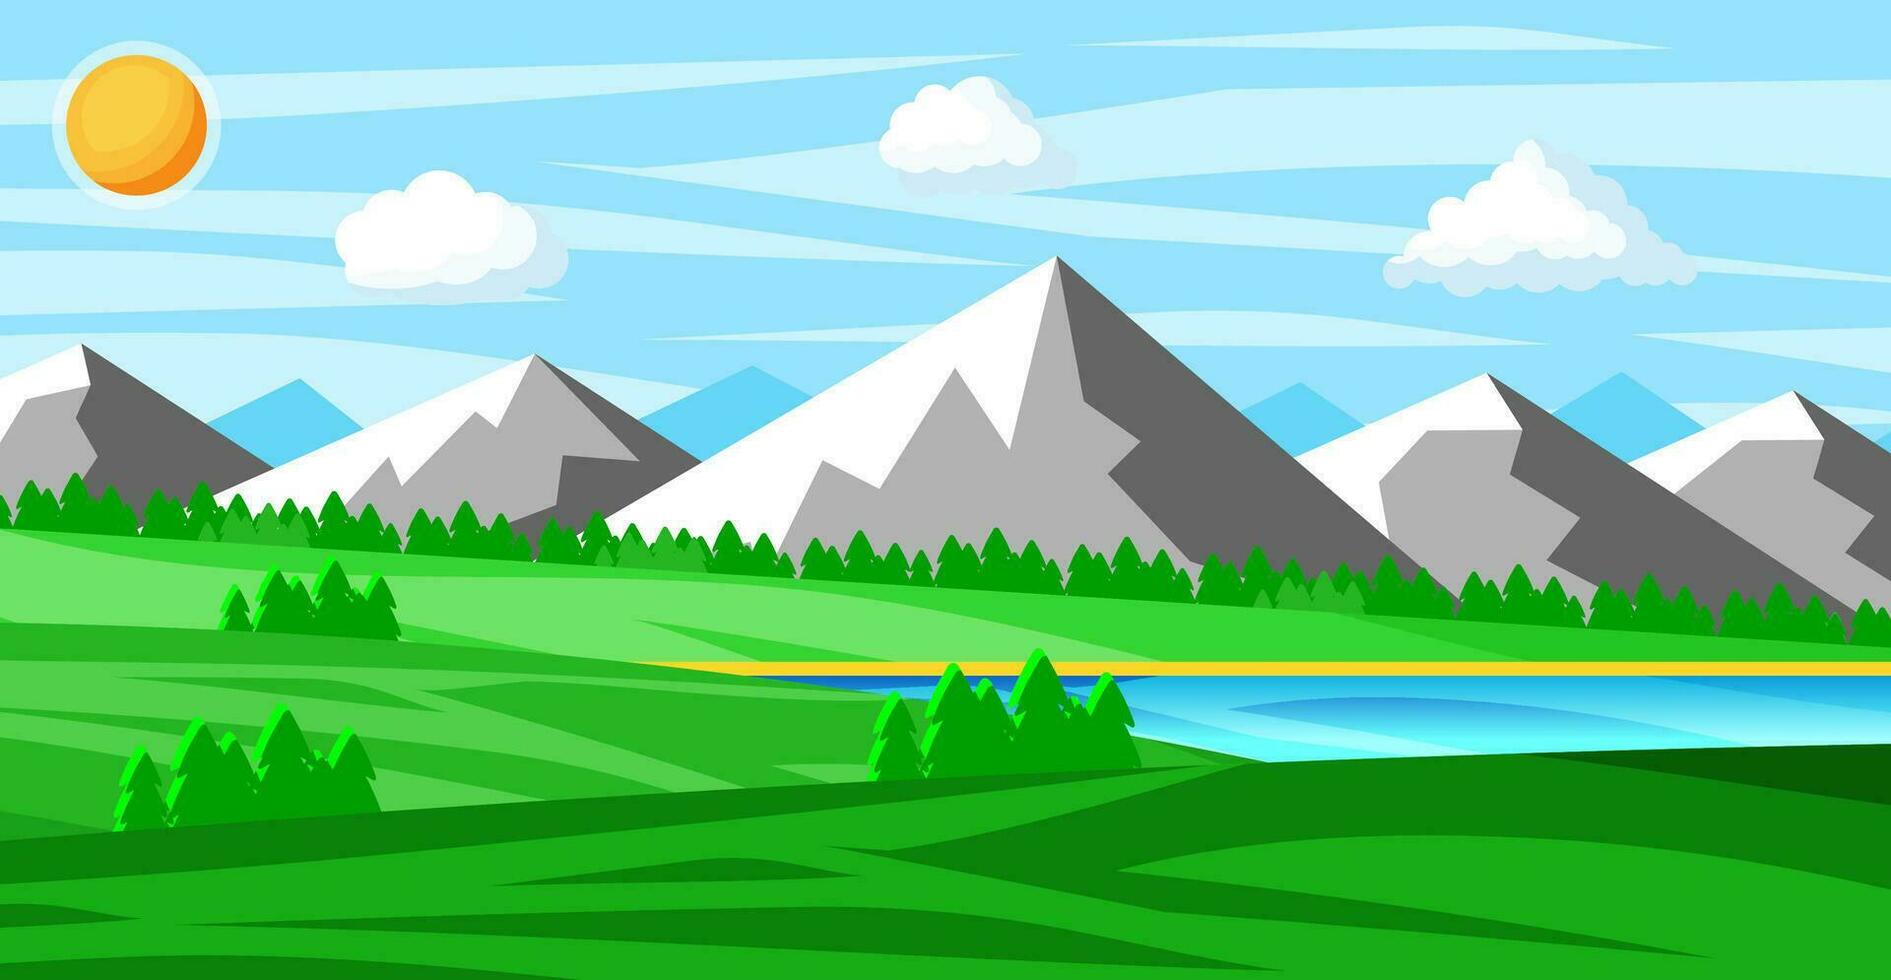 landskap av bergen och grön kullar. sommar natur landskap med stenar, skog, gräs, Sol, himmel, sjö och moln. nationell parkera eller natur boka. vektor illustration i platt stil